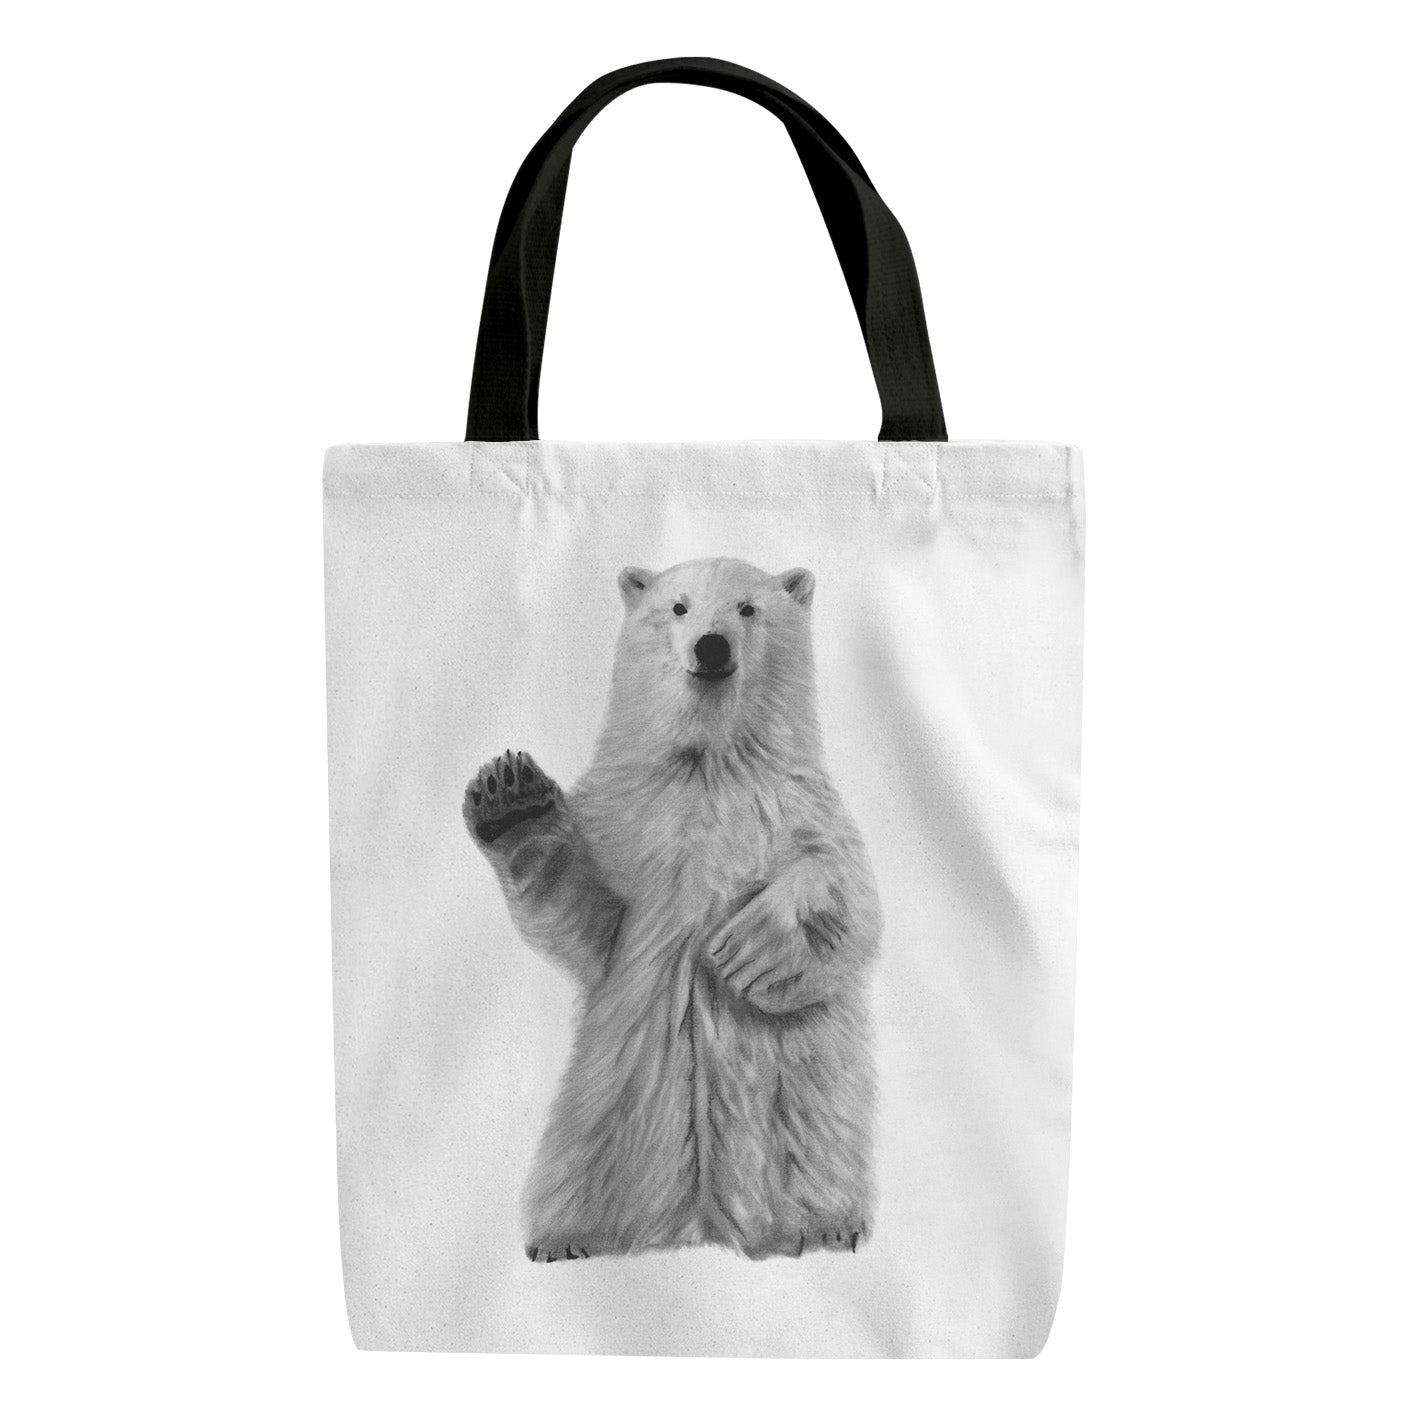 A Polar Bear Reusable Shopper Bag From Libra Fine Arts